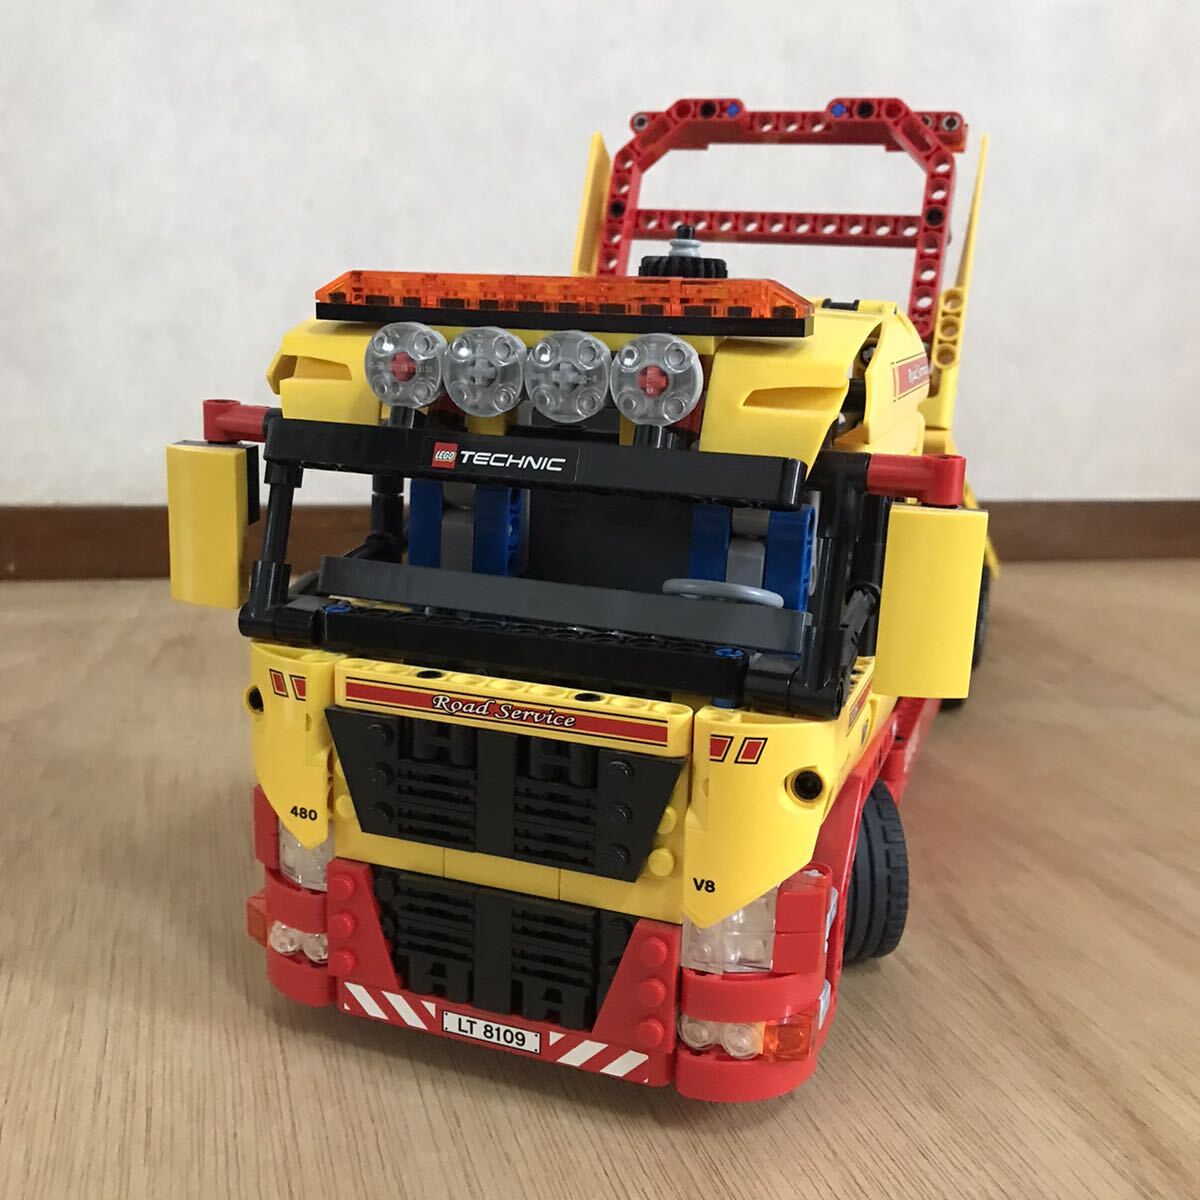 LEGO レゴ 8109 テクニック フラットベッドトラック 組み立て済み ジャンク品の画像2